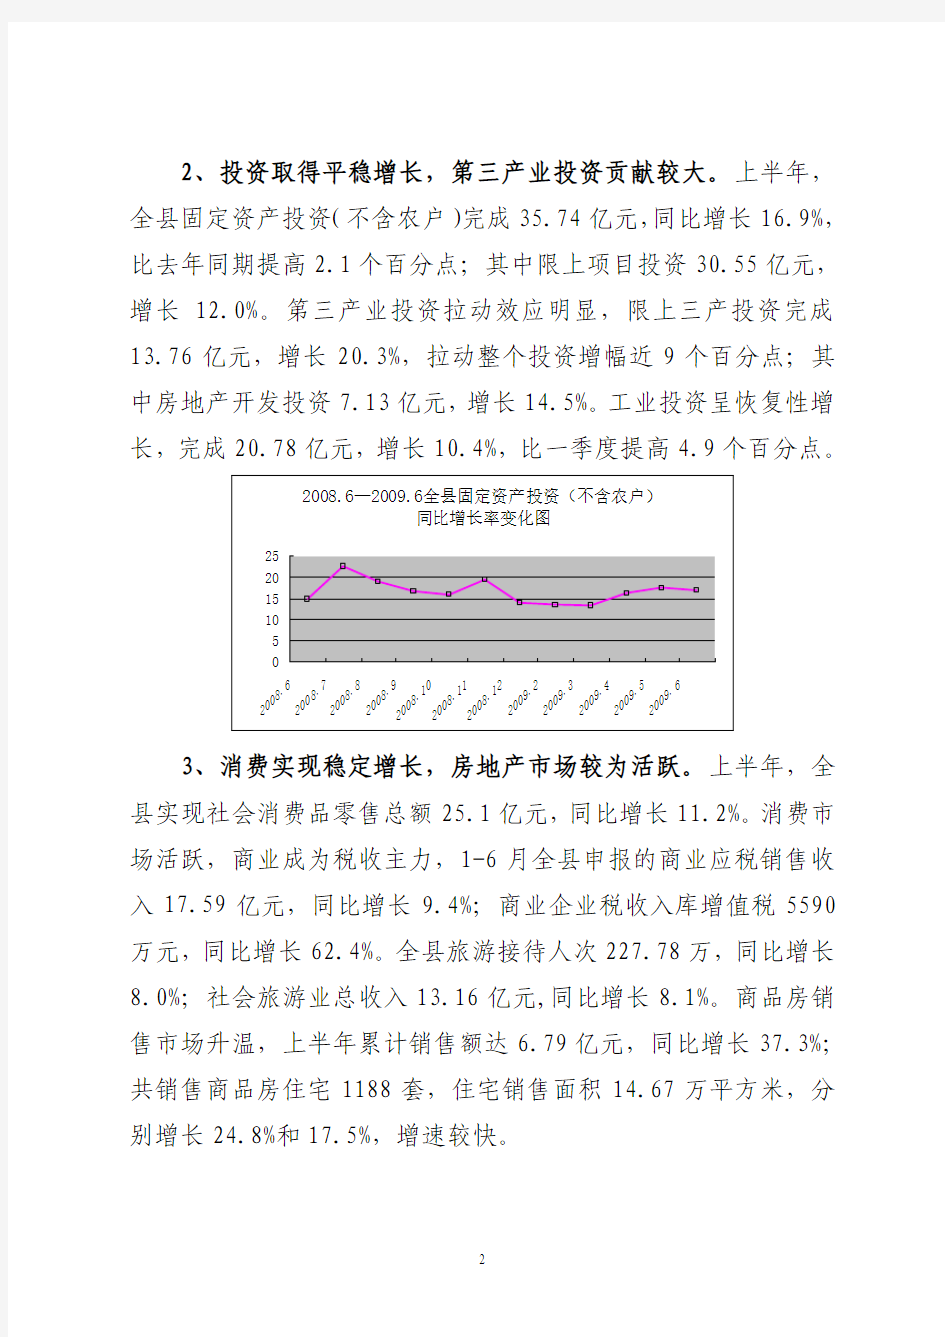 桐庐县2009年上半年经济运行分析报告